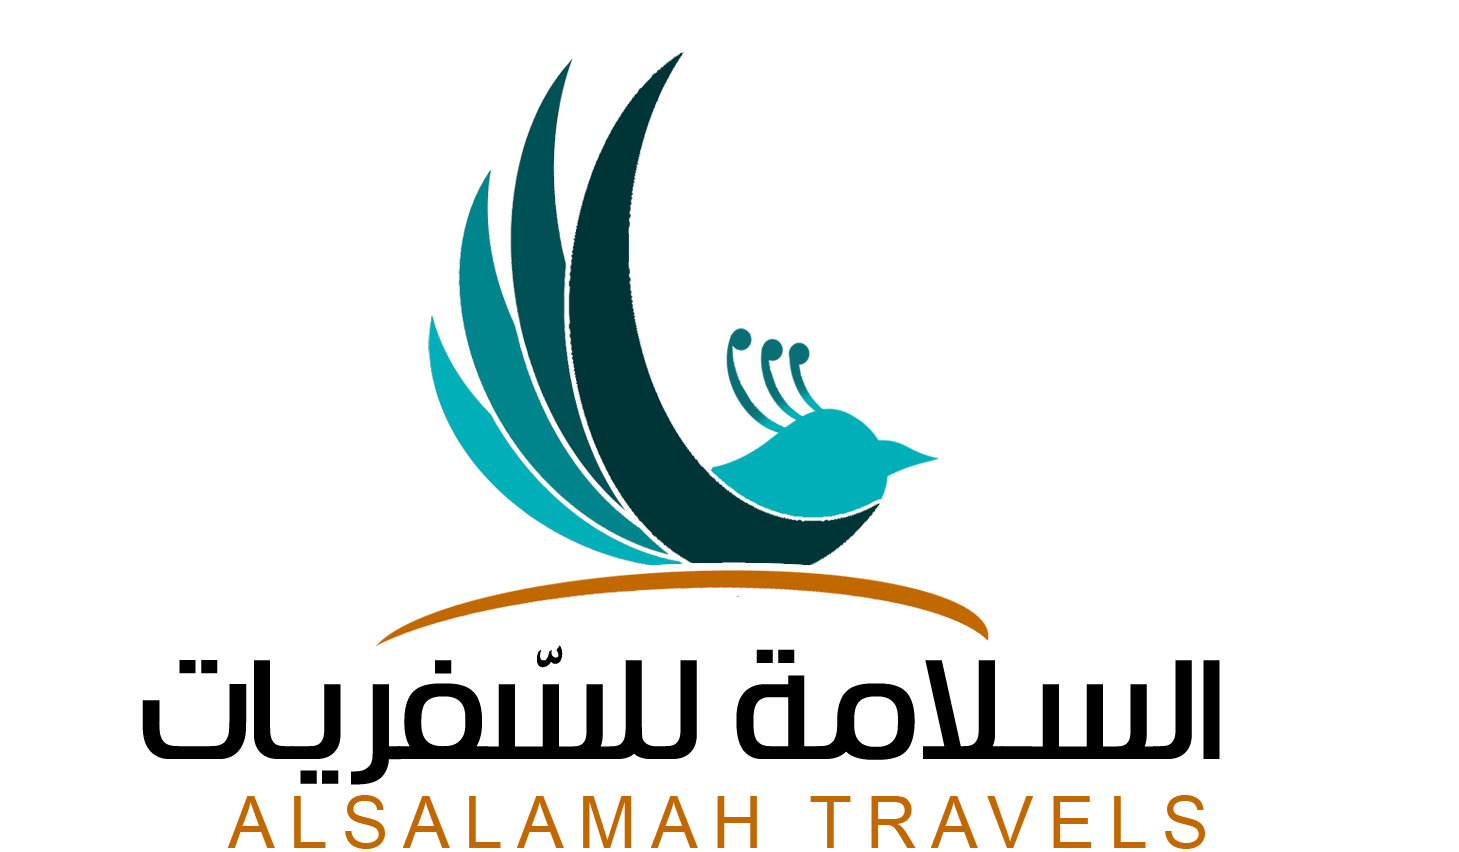 Alsalamah Travels